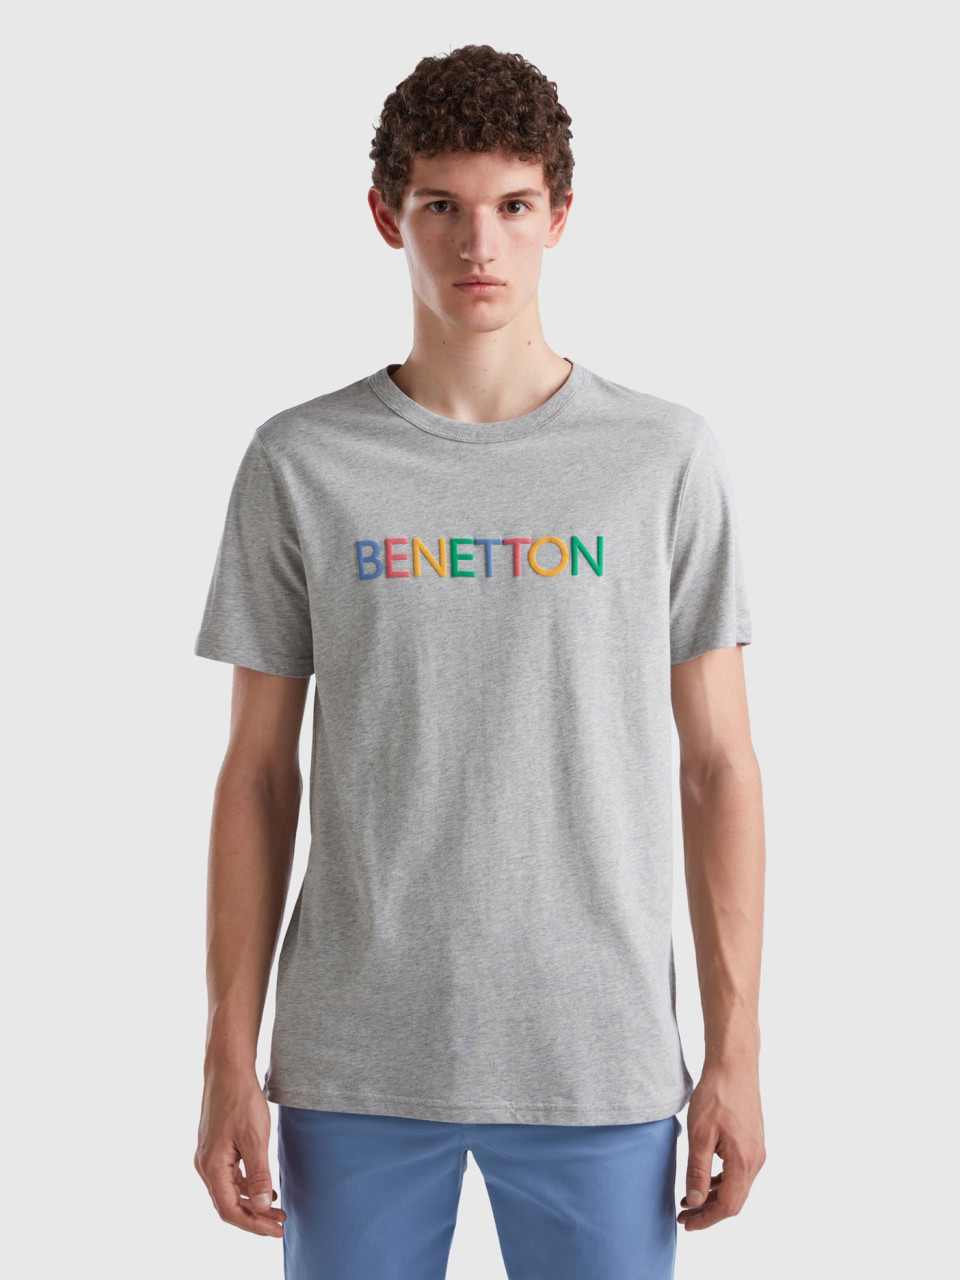 Benetton, Camiseta Gris De Algodón Orgánico Con Logotipo Multicolor, Gris Claro, Hombre